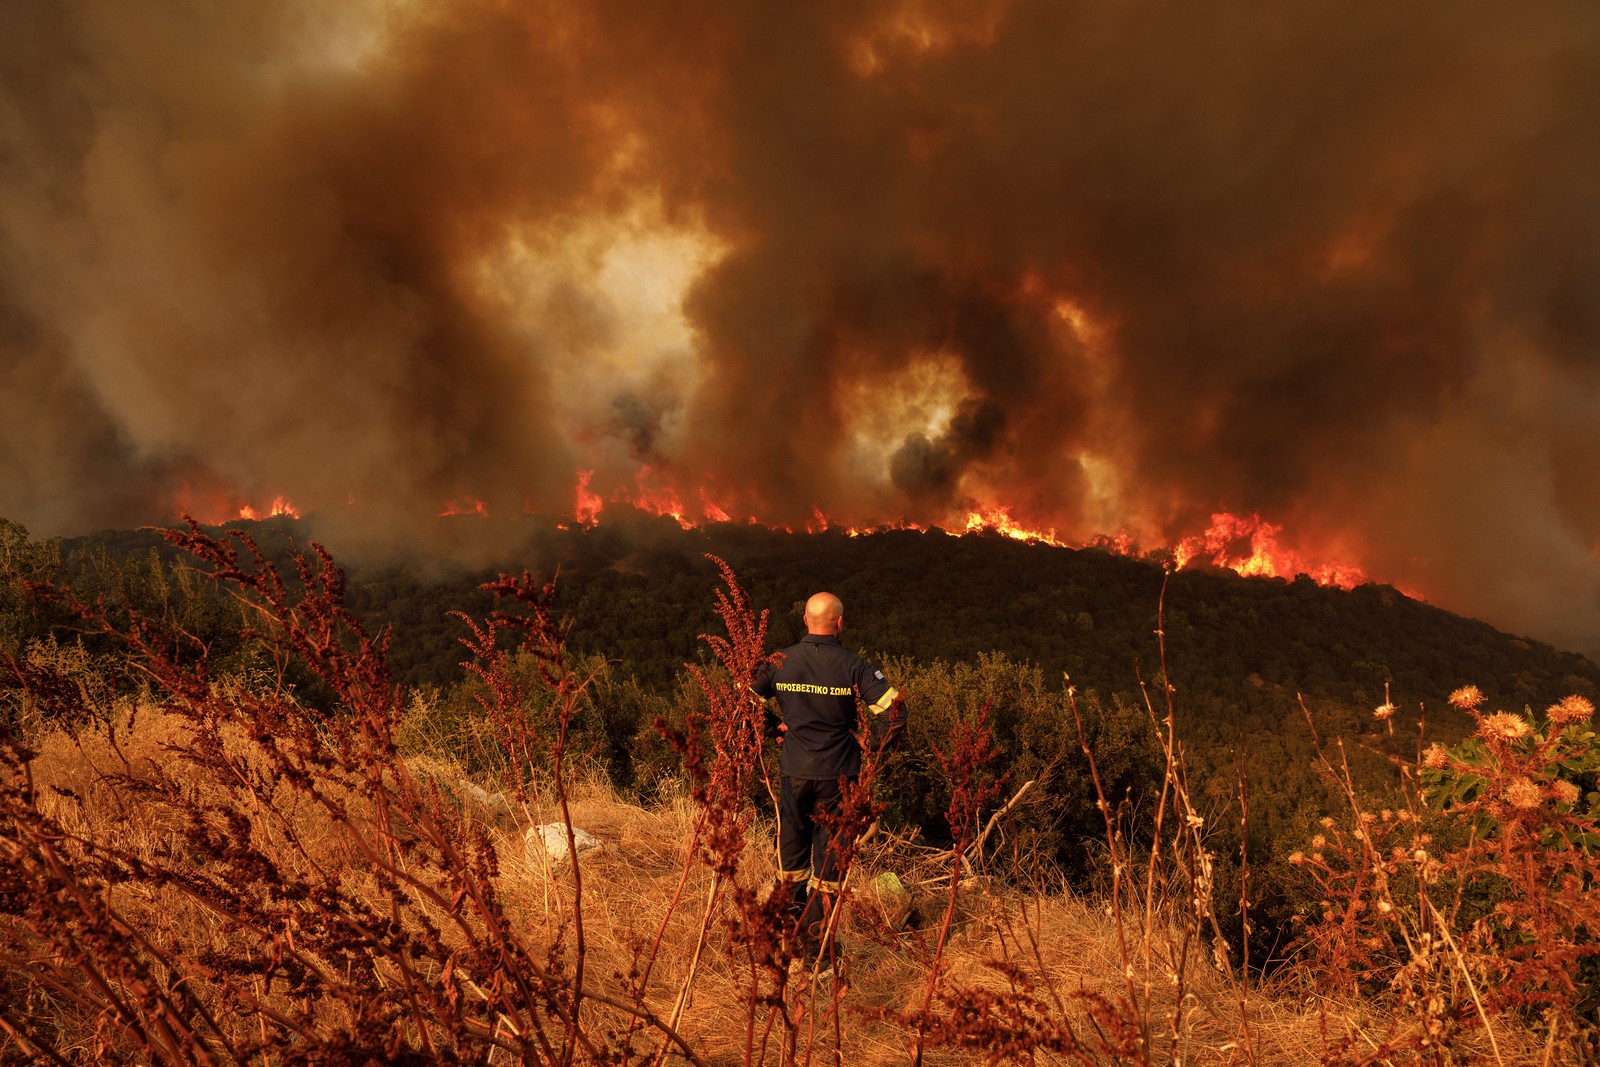 Φωτιές στον Έβρο: Δύσκολες ώρες στα δύο μέτωπα – Κίνδυνος για το απολιθωμένο δάσος της Λευκίμμης